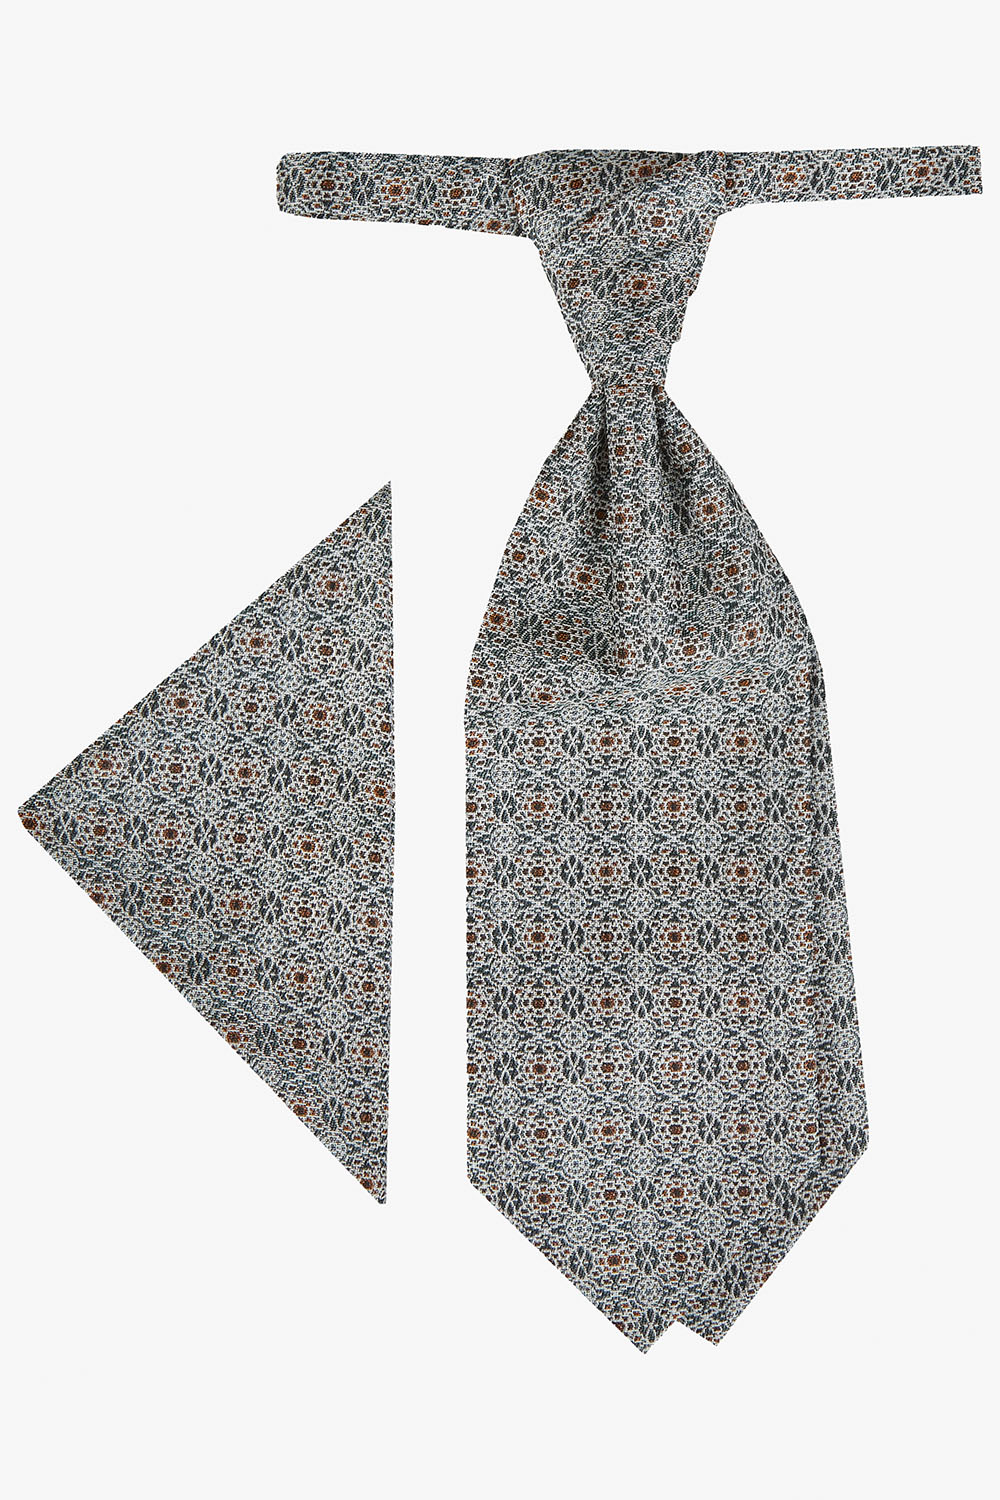 TZIACCO világoszöld francia nyakkendő szett 597201-45